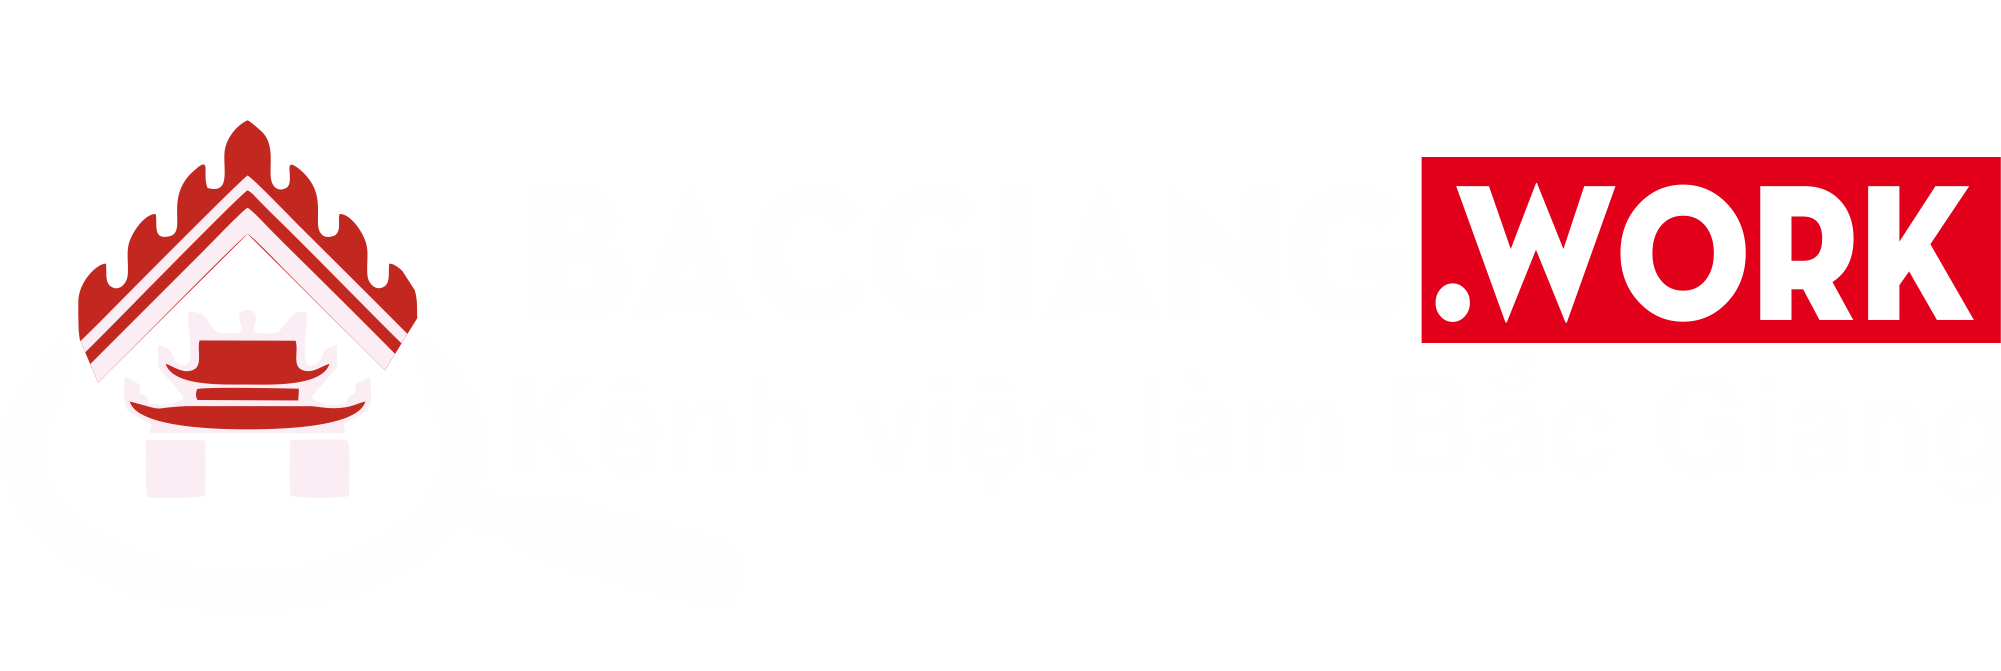 Logo Bac Giang Work Am Ban